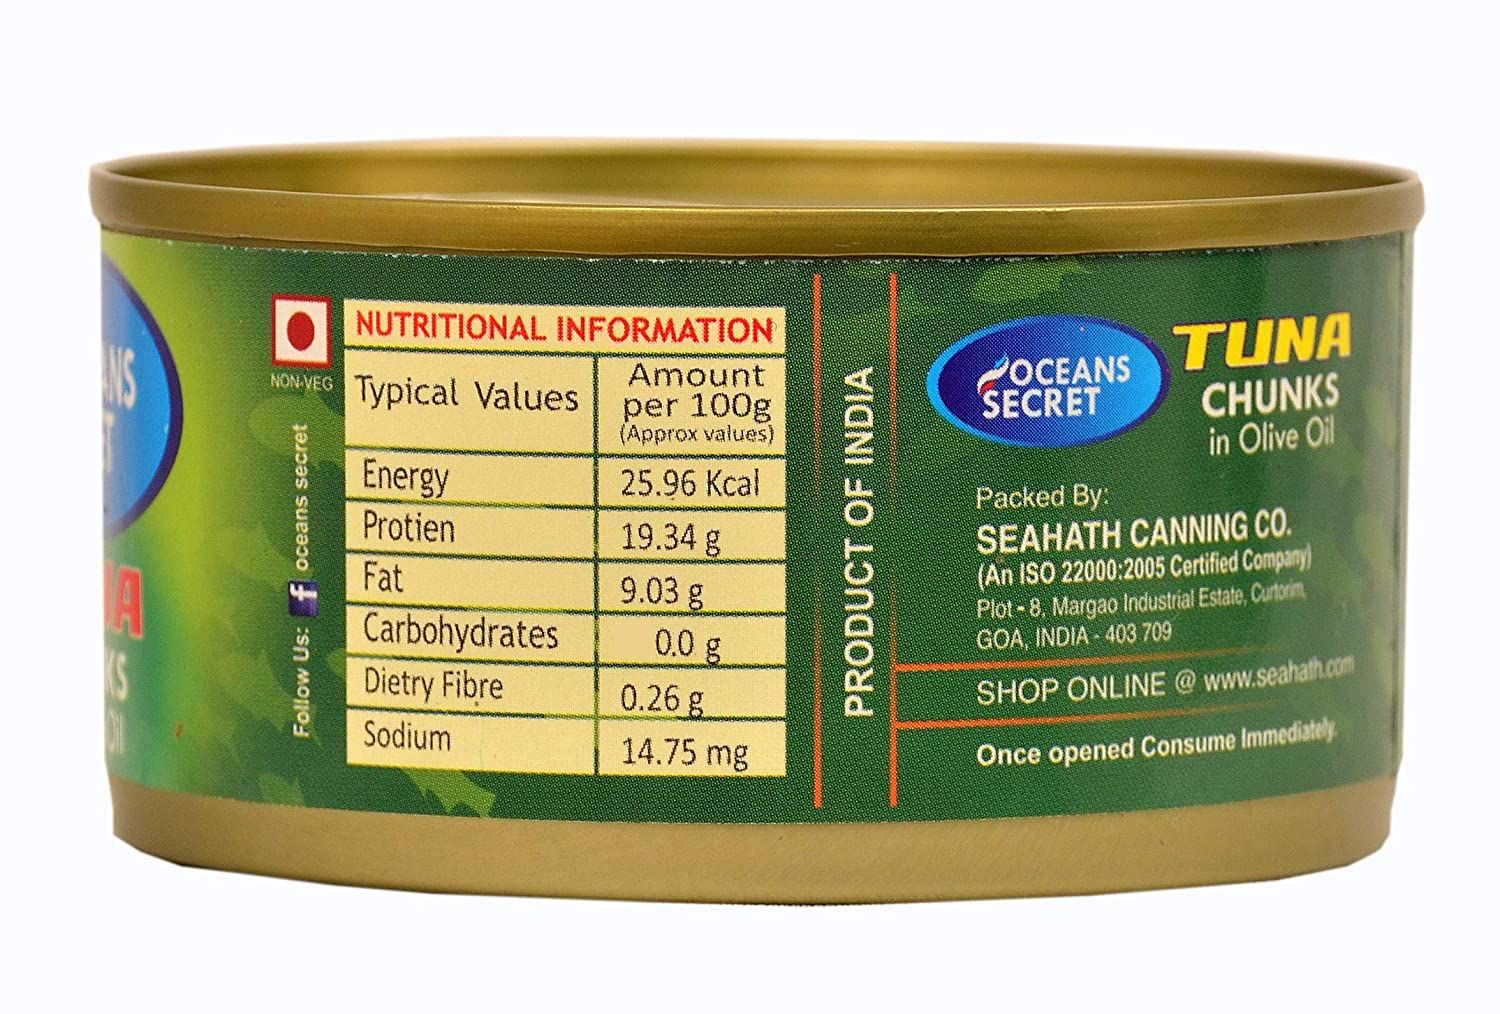 Ocean's Secret Tuna Chunks in Olive Oil Image